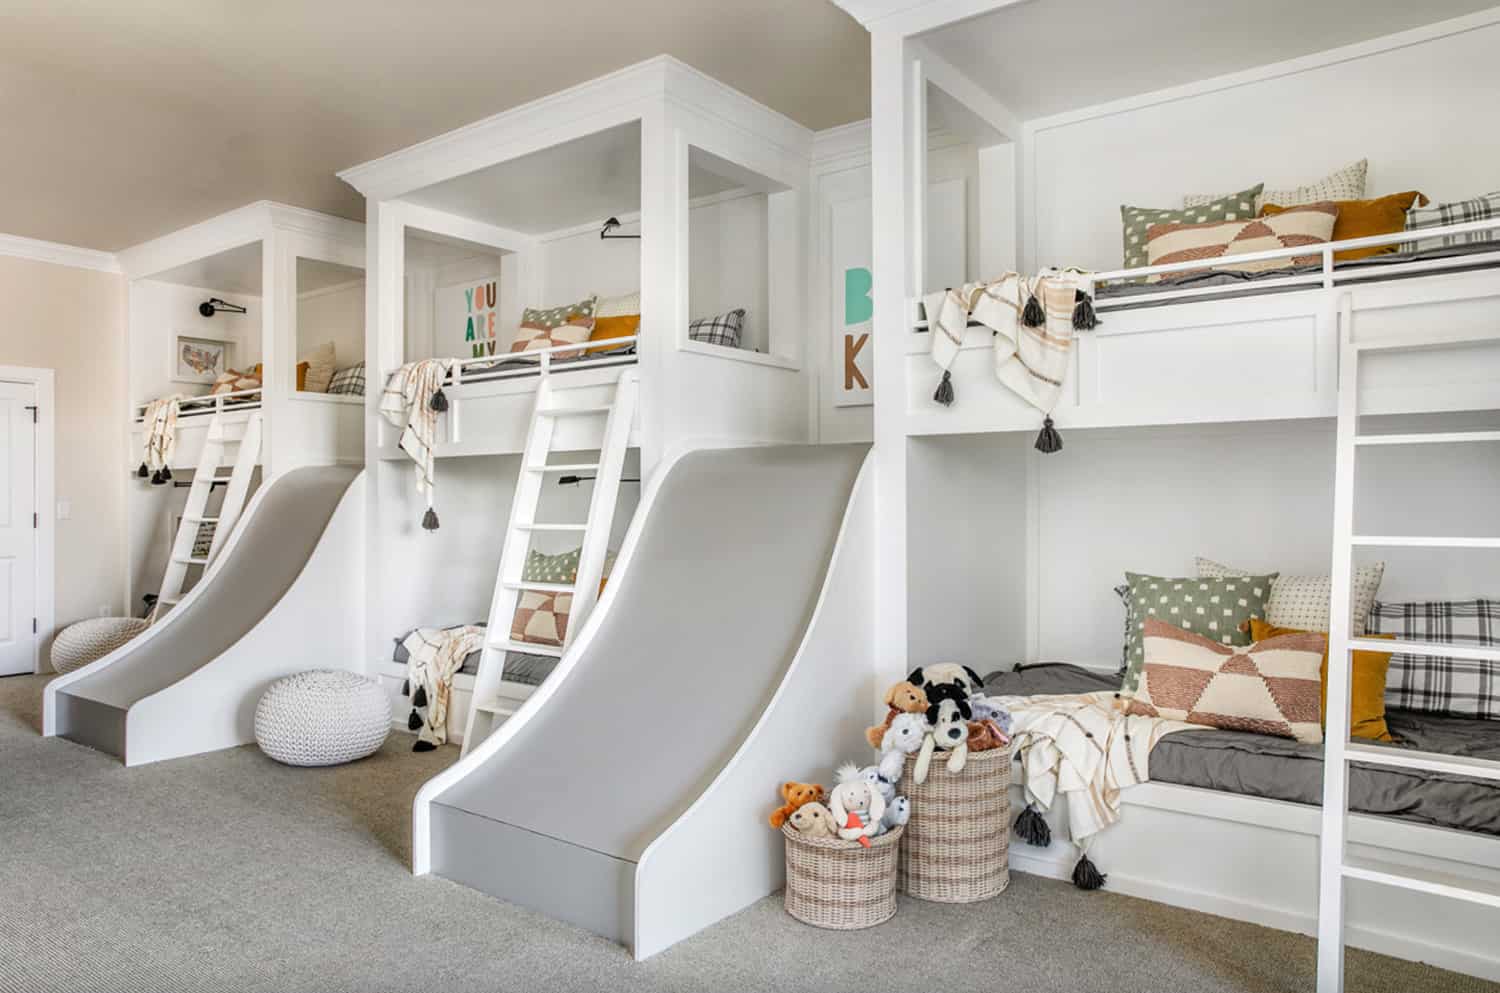 transitional-kids-bunk-bedroom